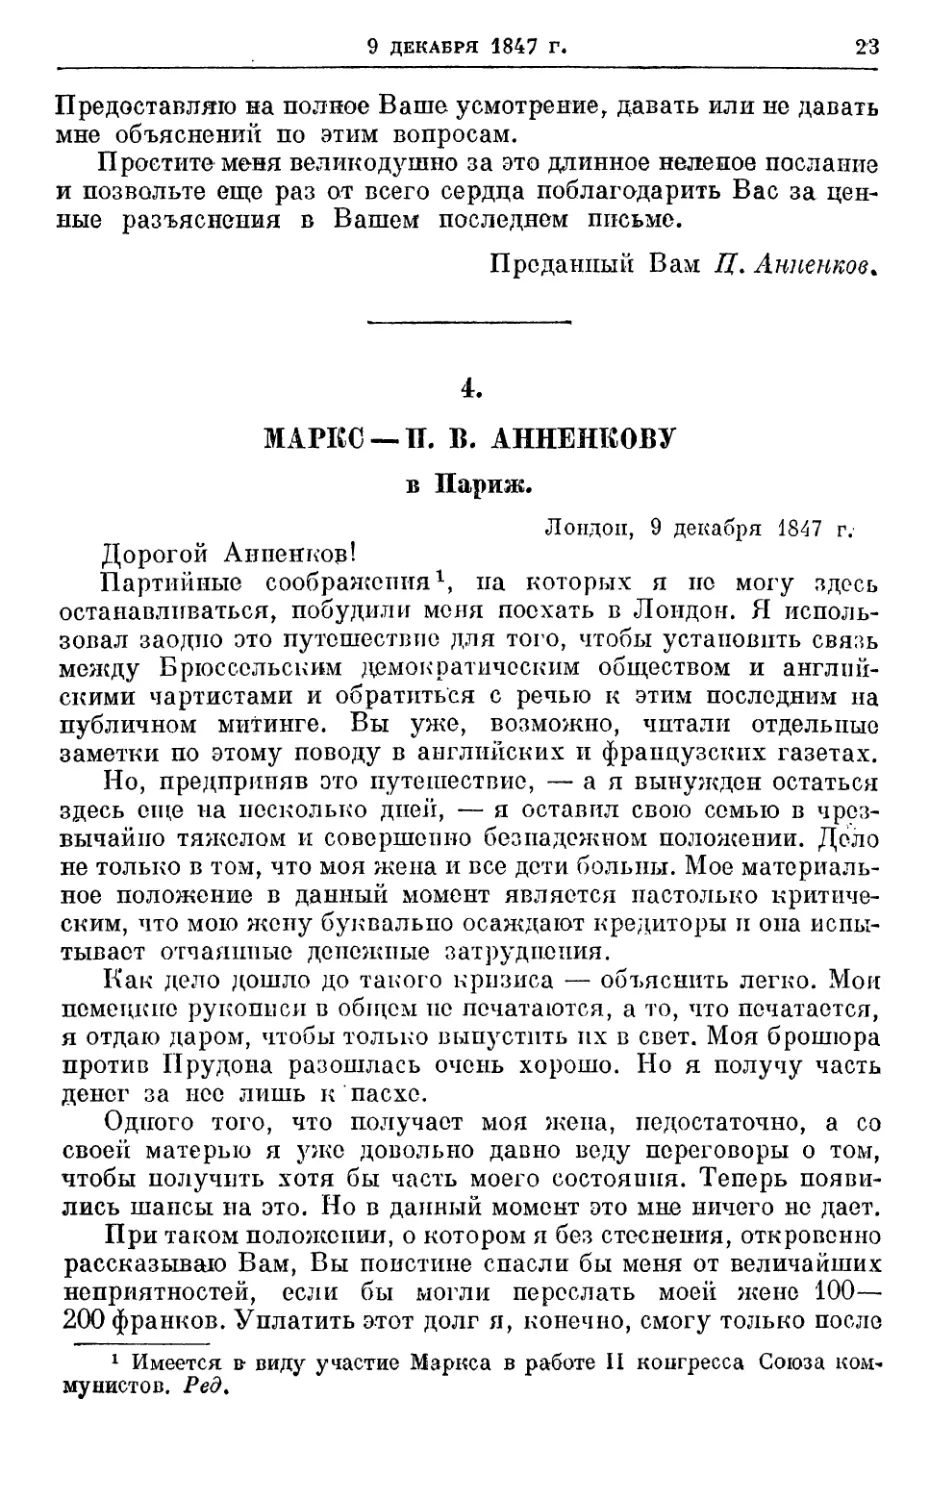 4. Маркс — П. В. Анненкову, 9 декабря 1847г